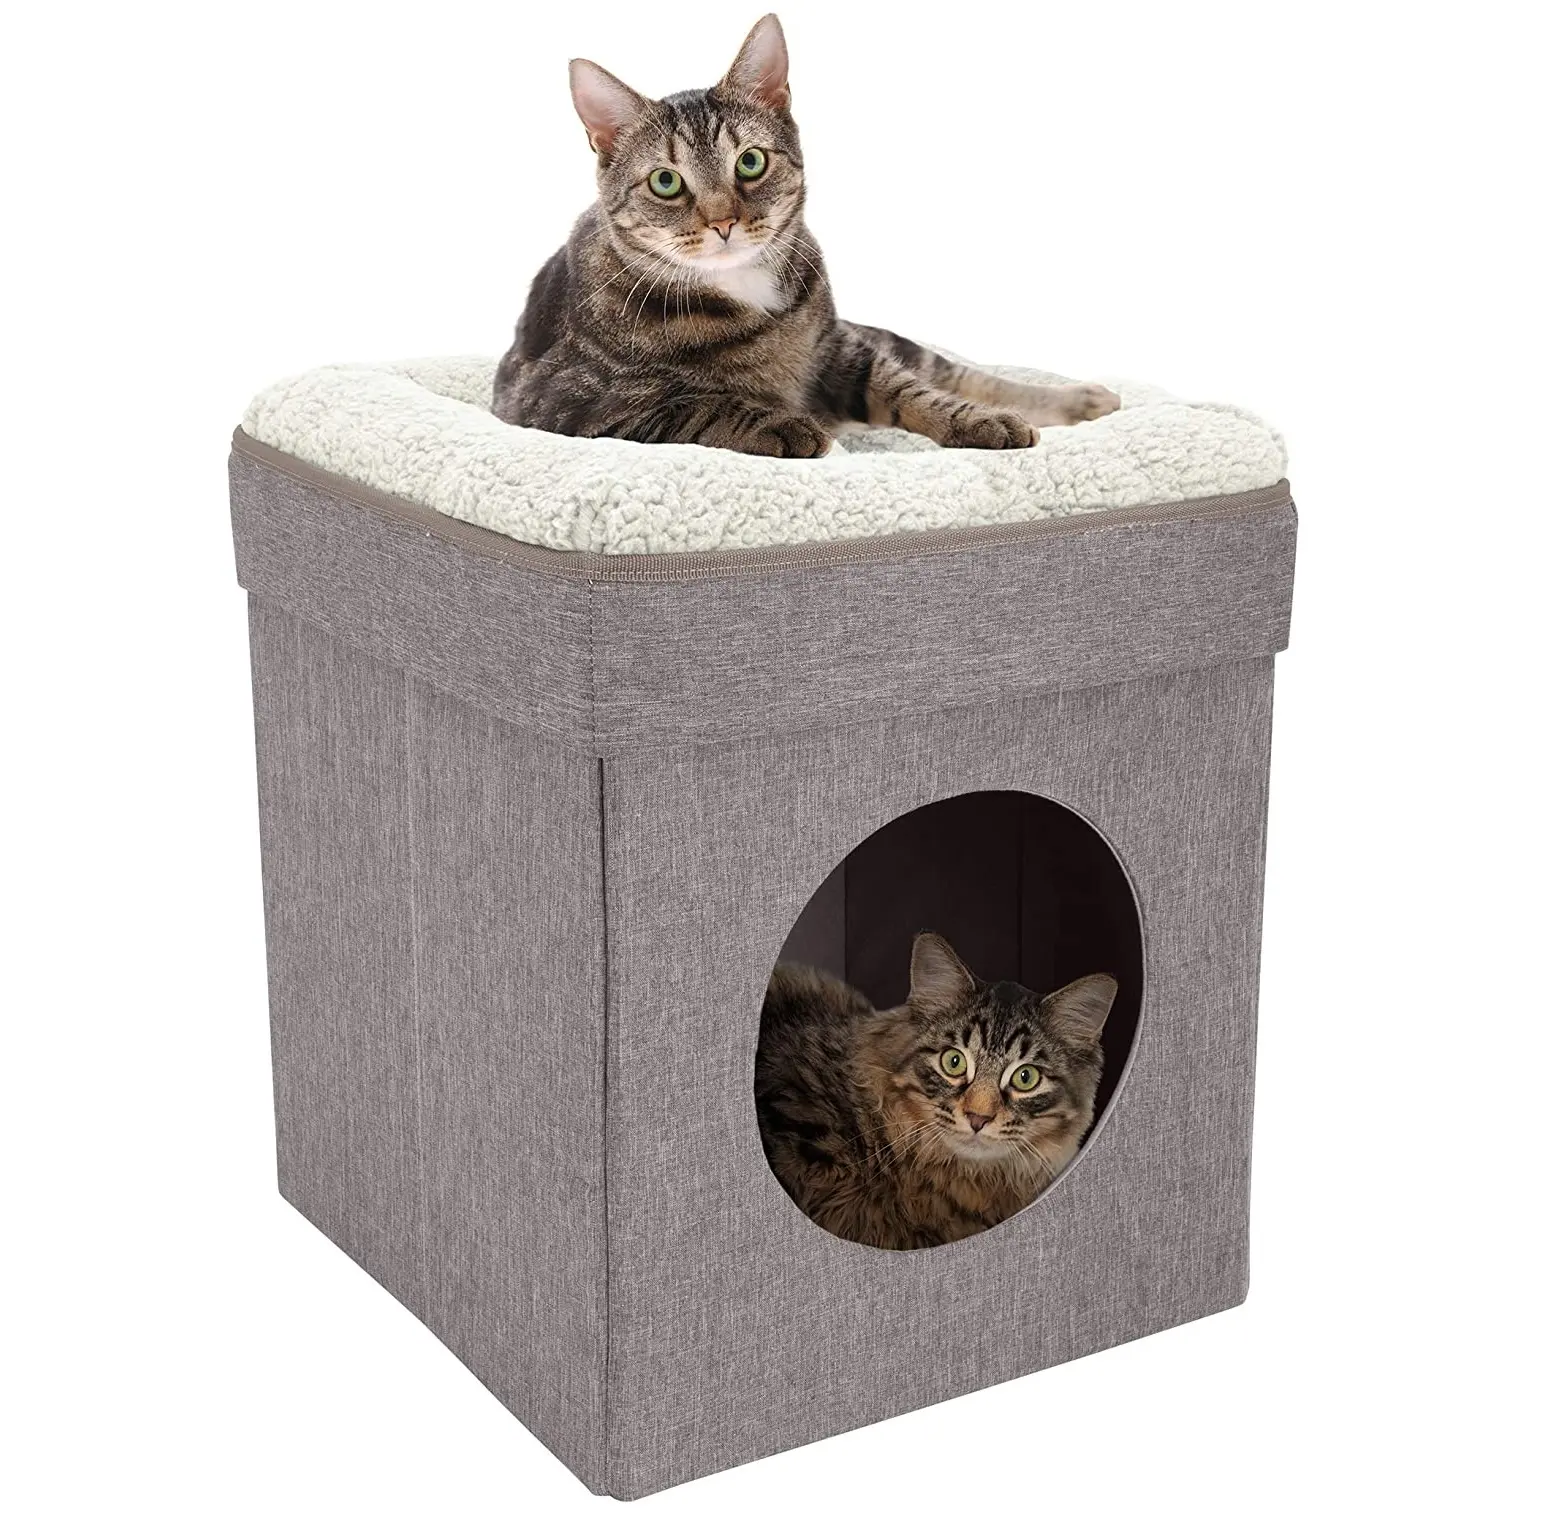 Cama plegable 2 en 1 para perros y gatos, tienda de campaña para gatos, Casa para gatos con cama